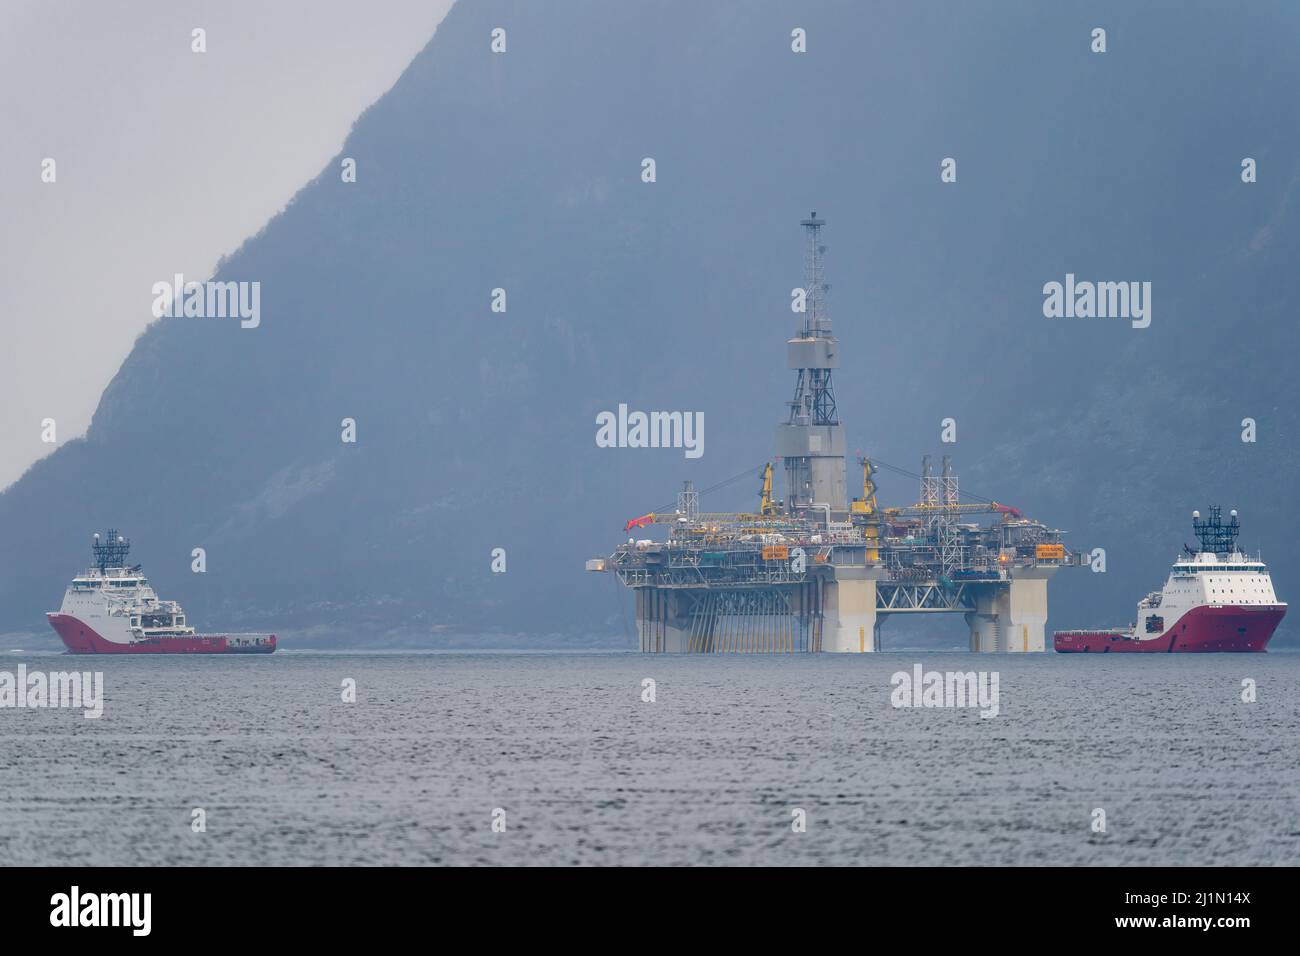 RIG spostamento della piattaforma petrolifera di Equinor Njord Alpha con ahts vasi Siem Pearl e Siem Opal all'interno del fiordo norvegese. Foto Stock